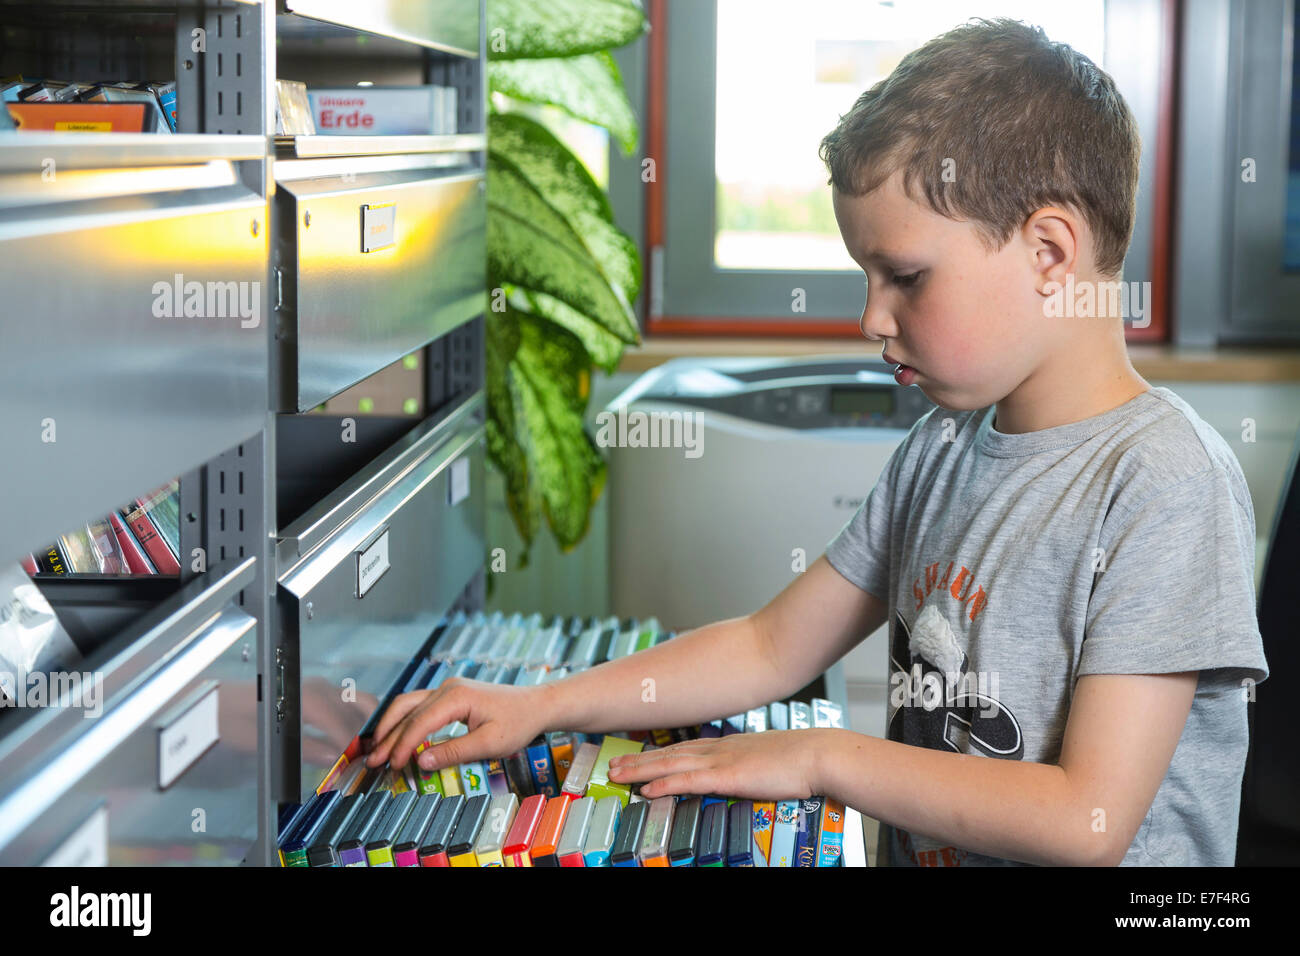 Garçon, 7 ans, à la recherche de films pour enfants à l'étagère de DVD, bibliothèque multimédia de la bibliothèque municipale, Coswig, Saxe, Allemagne Banque D'Images